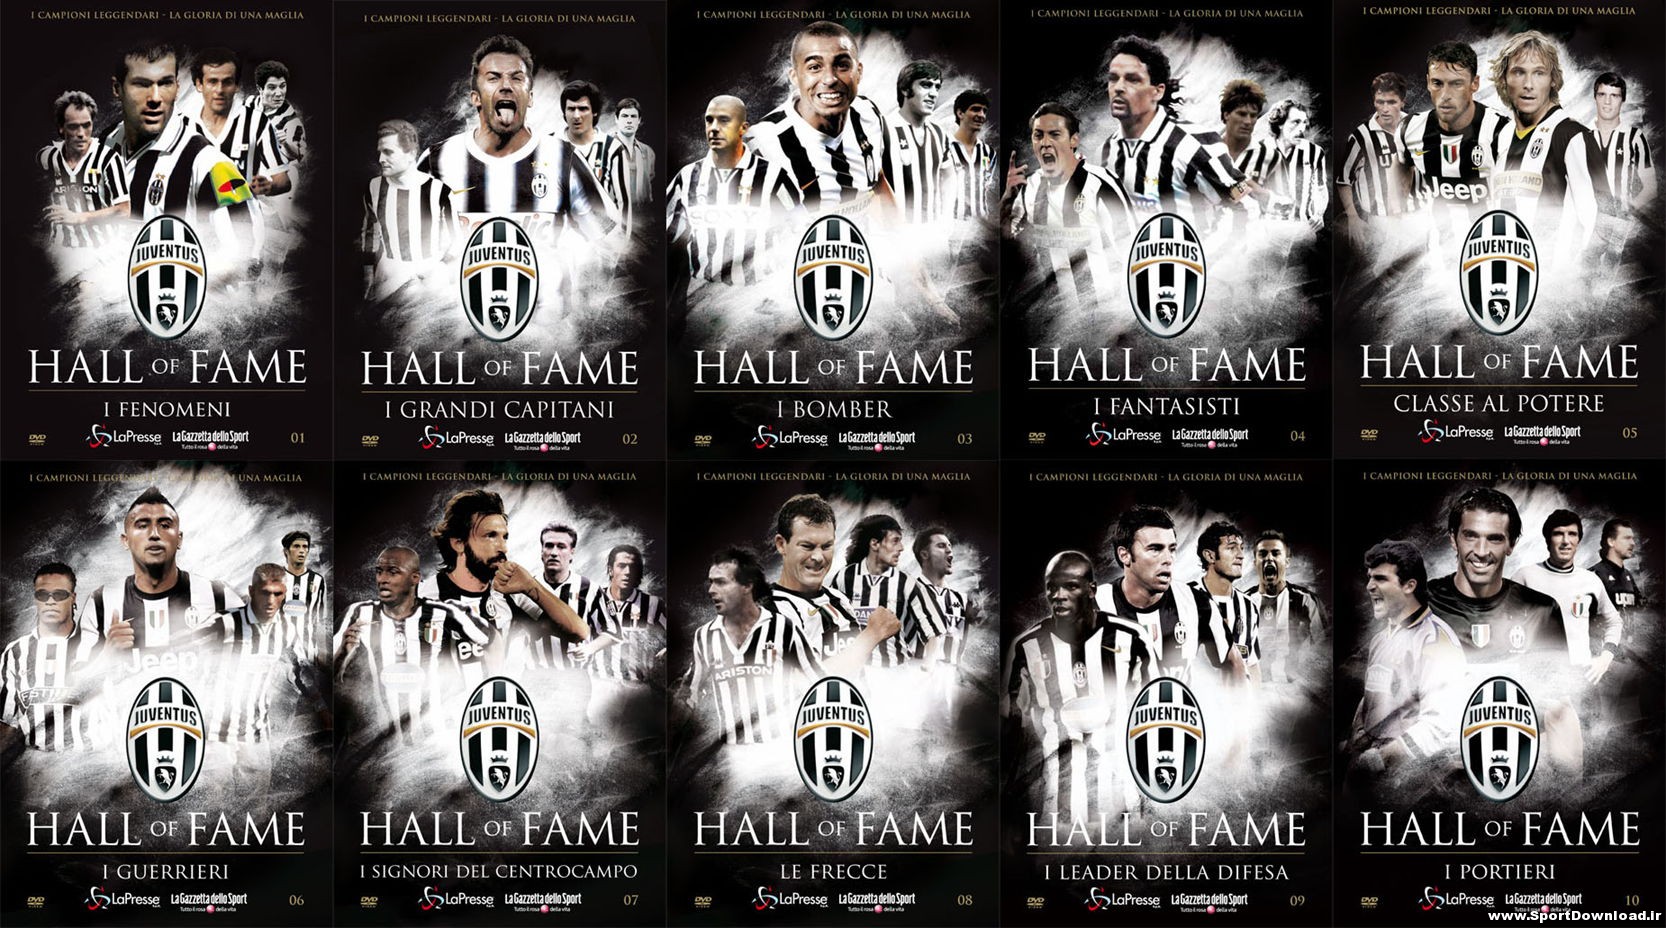 Juventus Hall of Fame